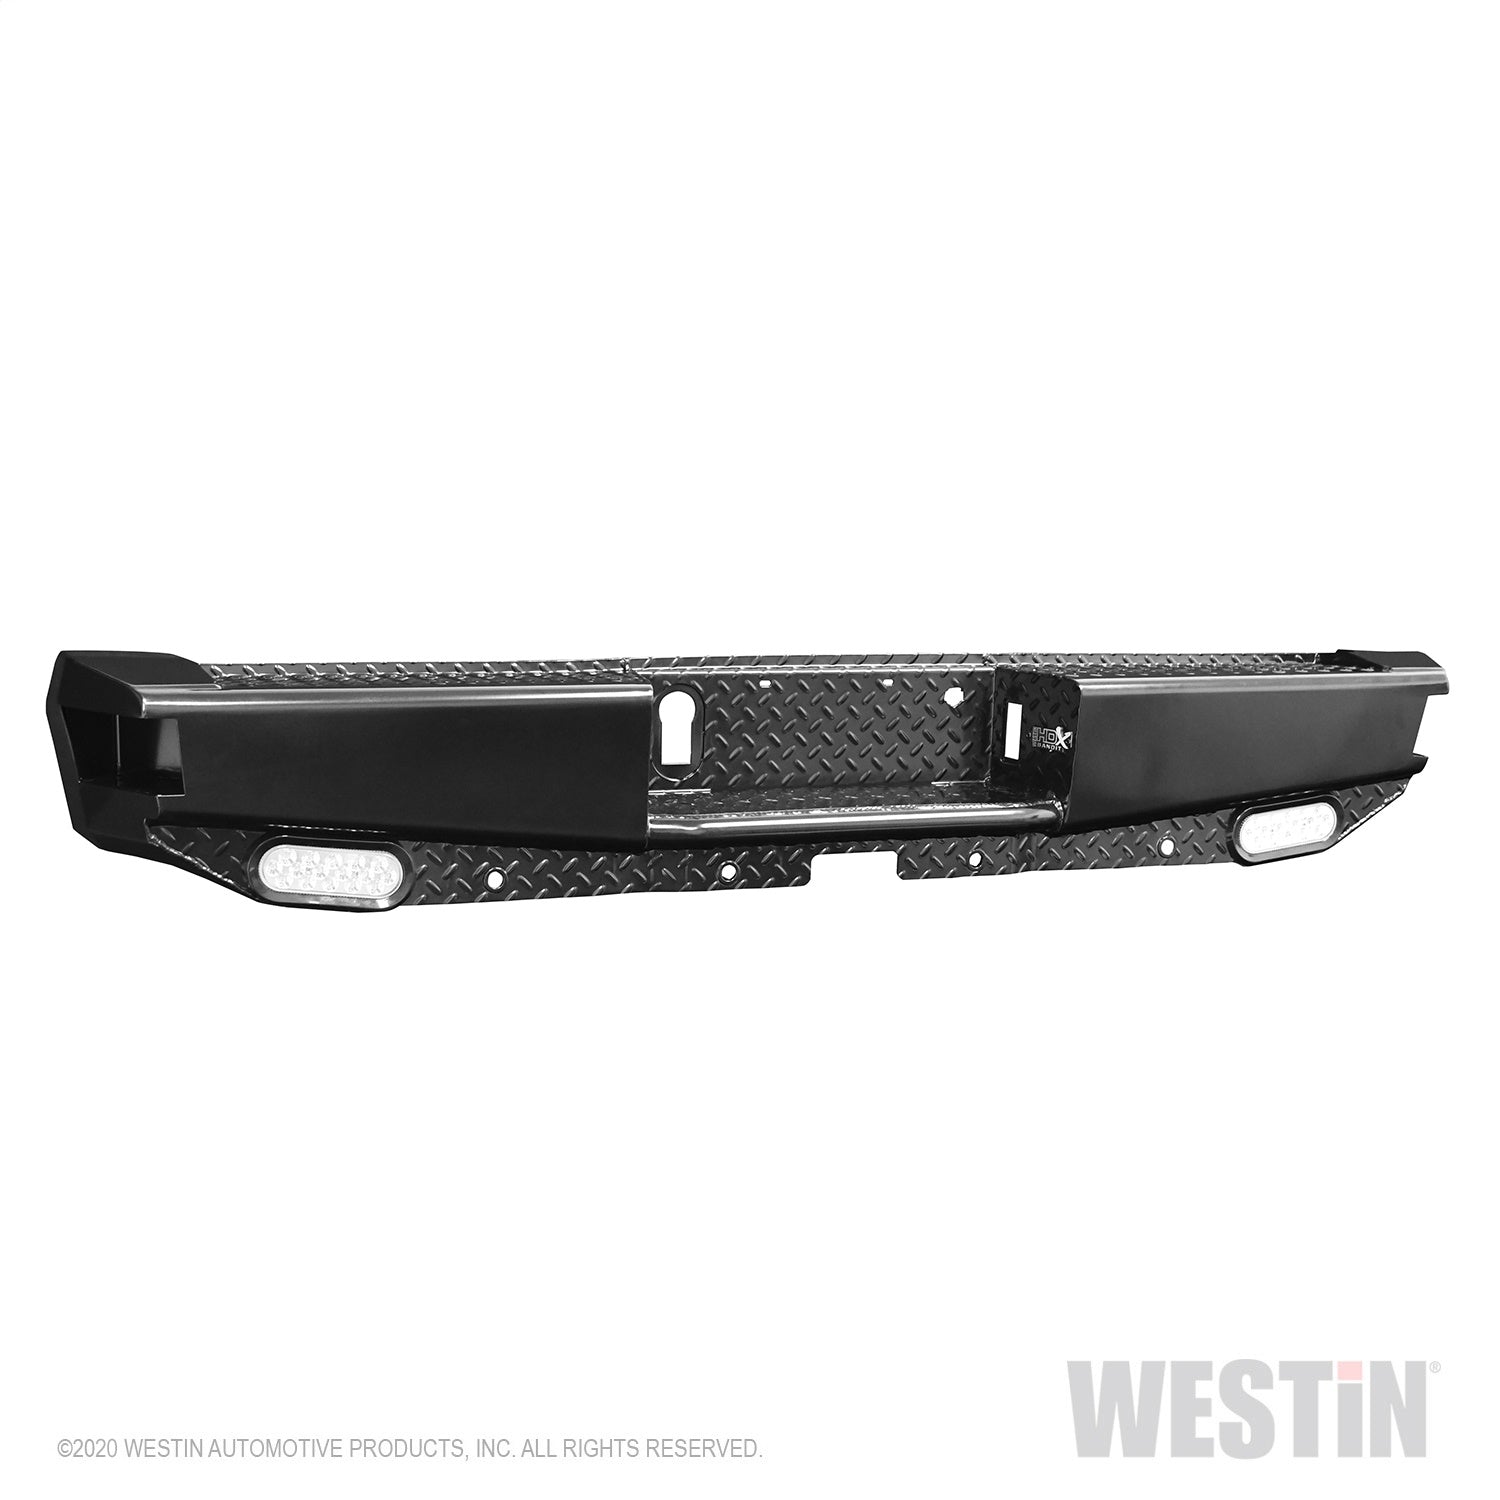 Westin 58-341105 HDX Bandit Rear Bumper Fits 15-20 F-150